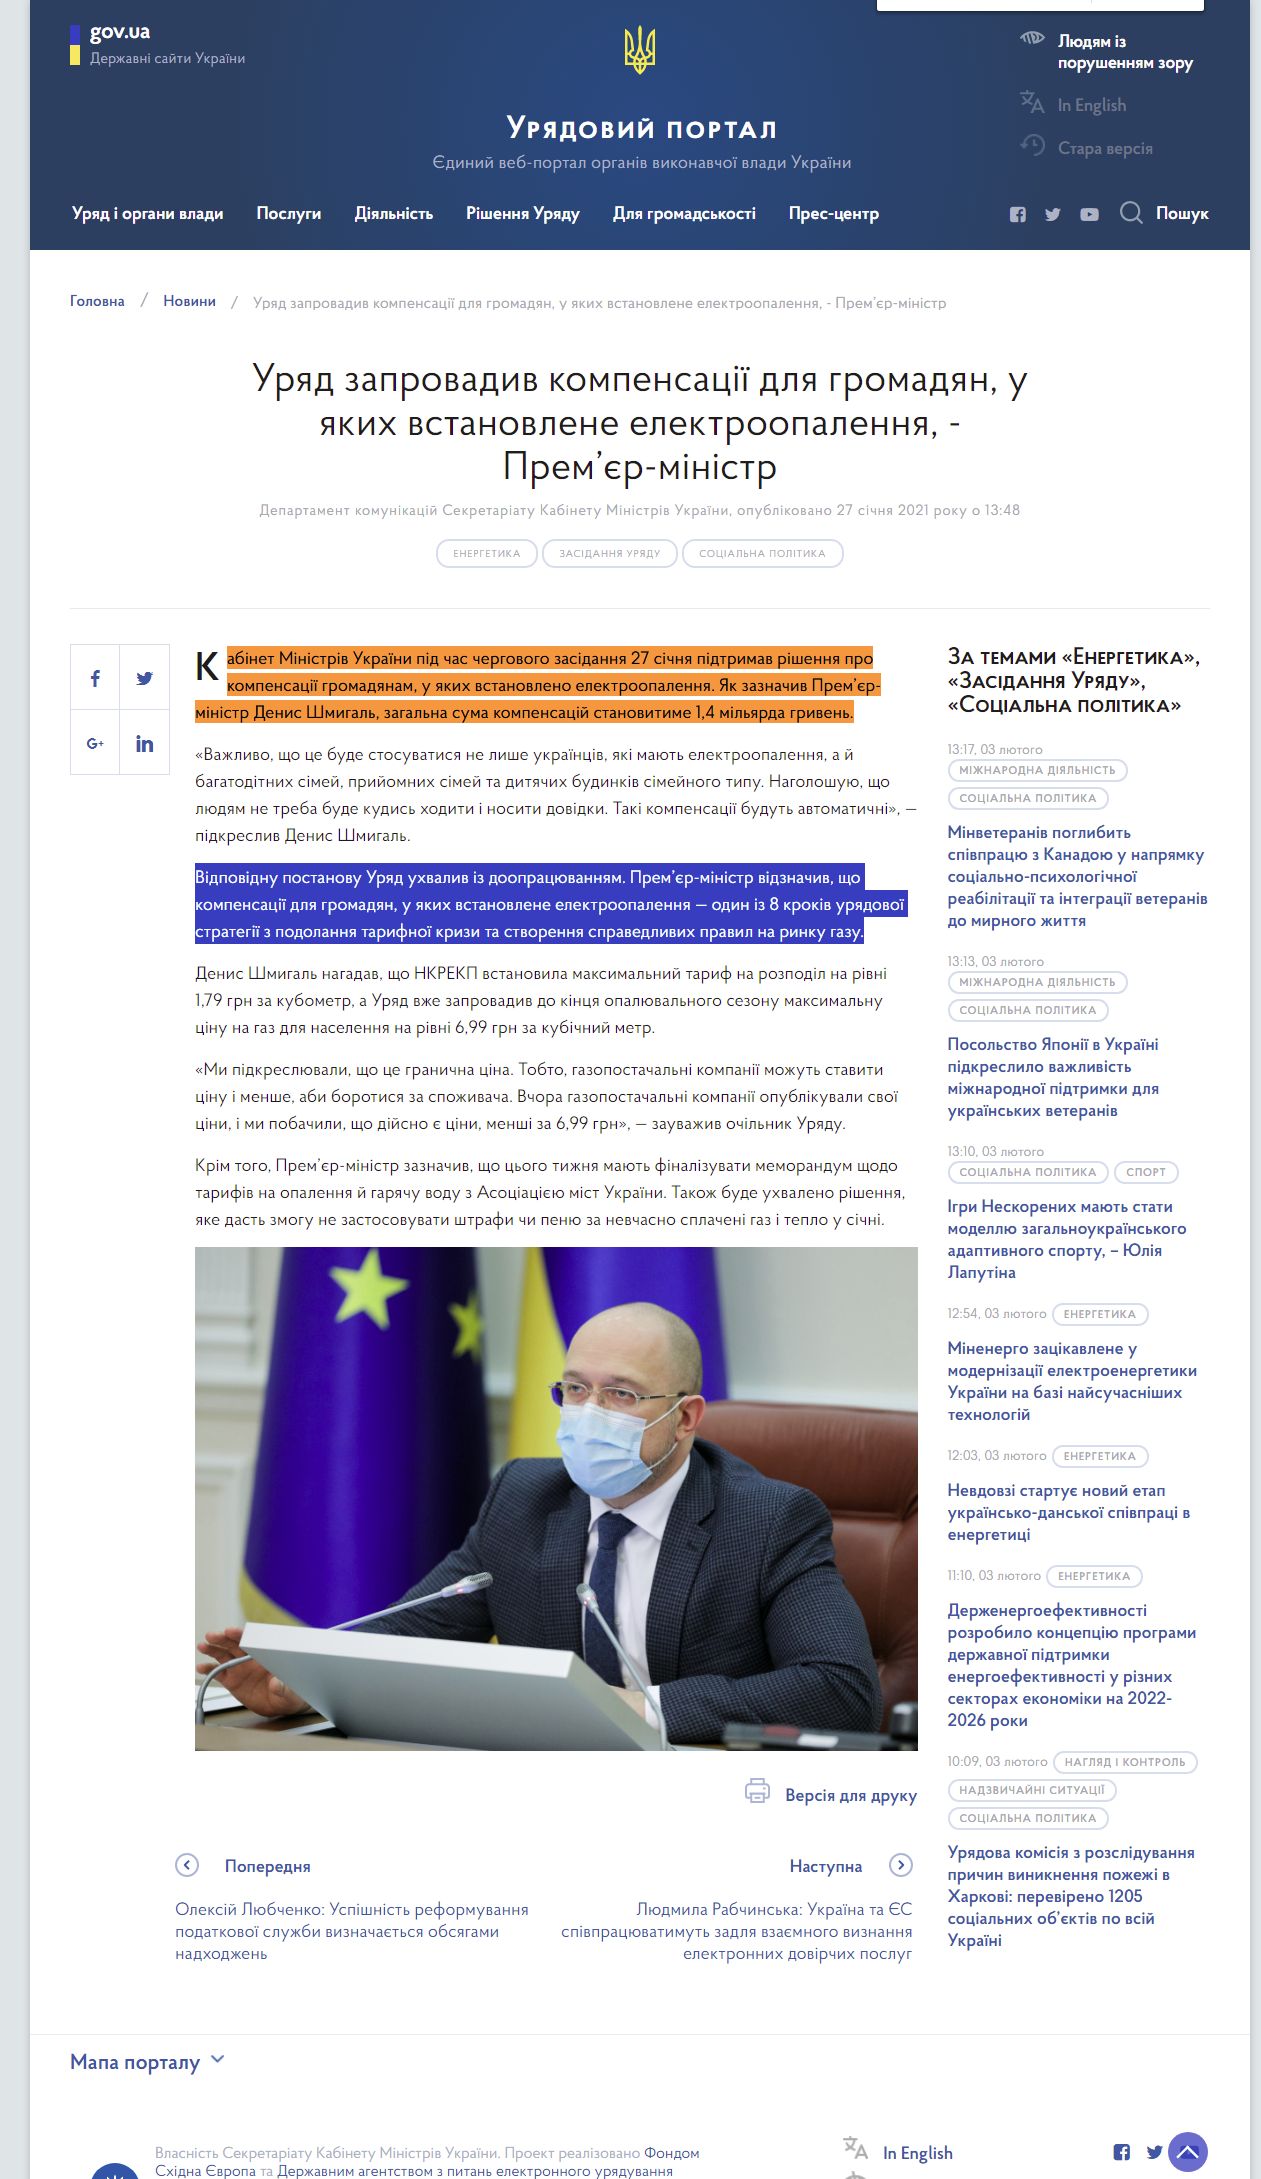 https://www.kmu.gov.ua/news/uryad-zaprovadiv-kompensaciyi-dlya-gromadyan-u-yakih-vstanovlene-elektroopalennya-premyer-ministr